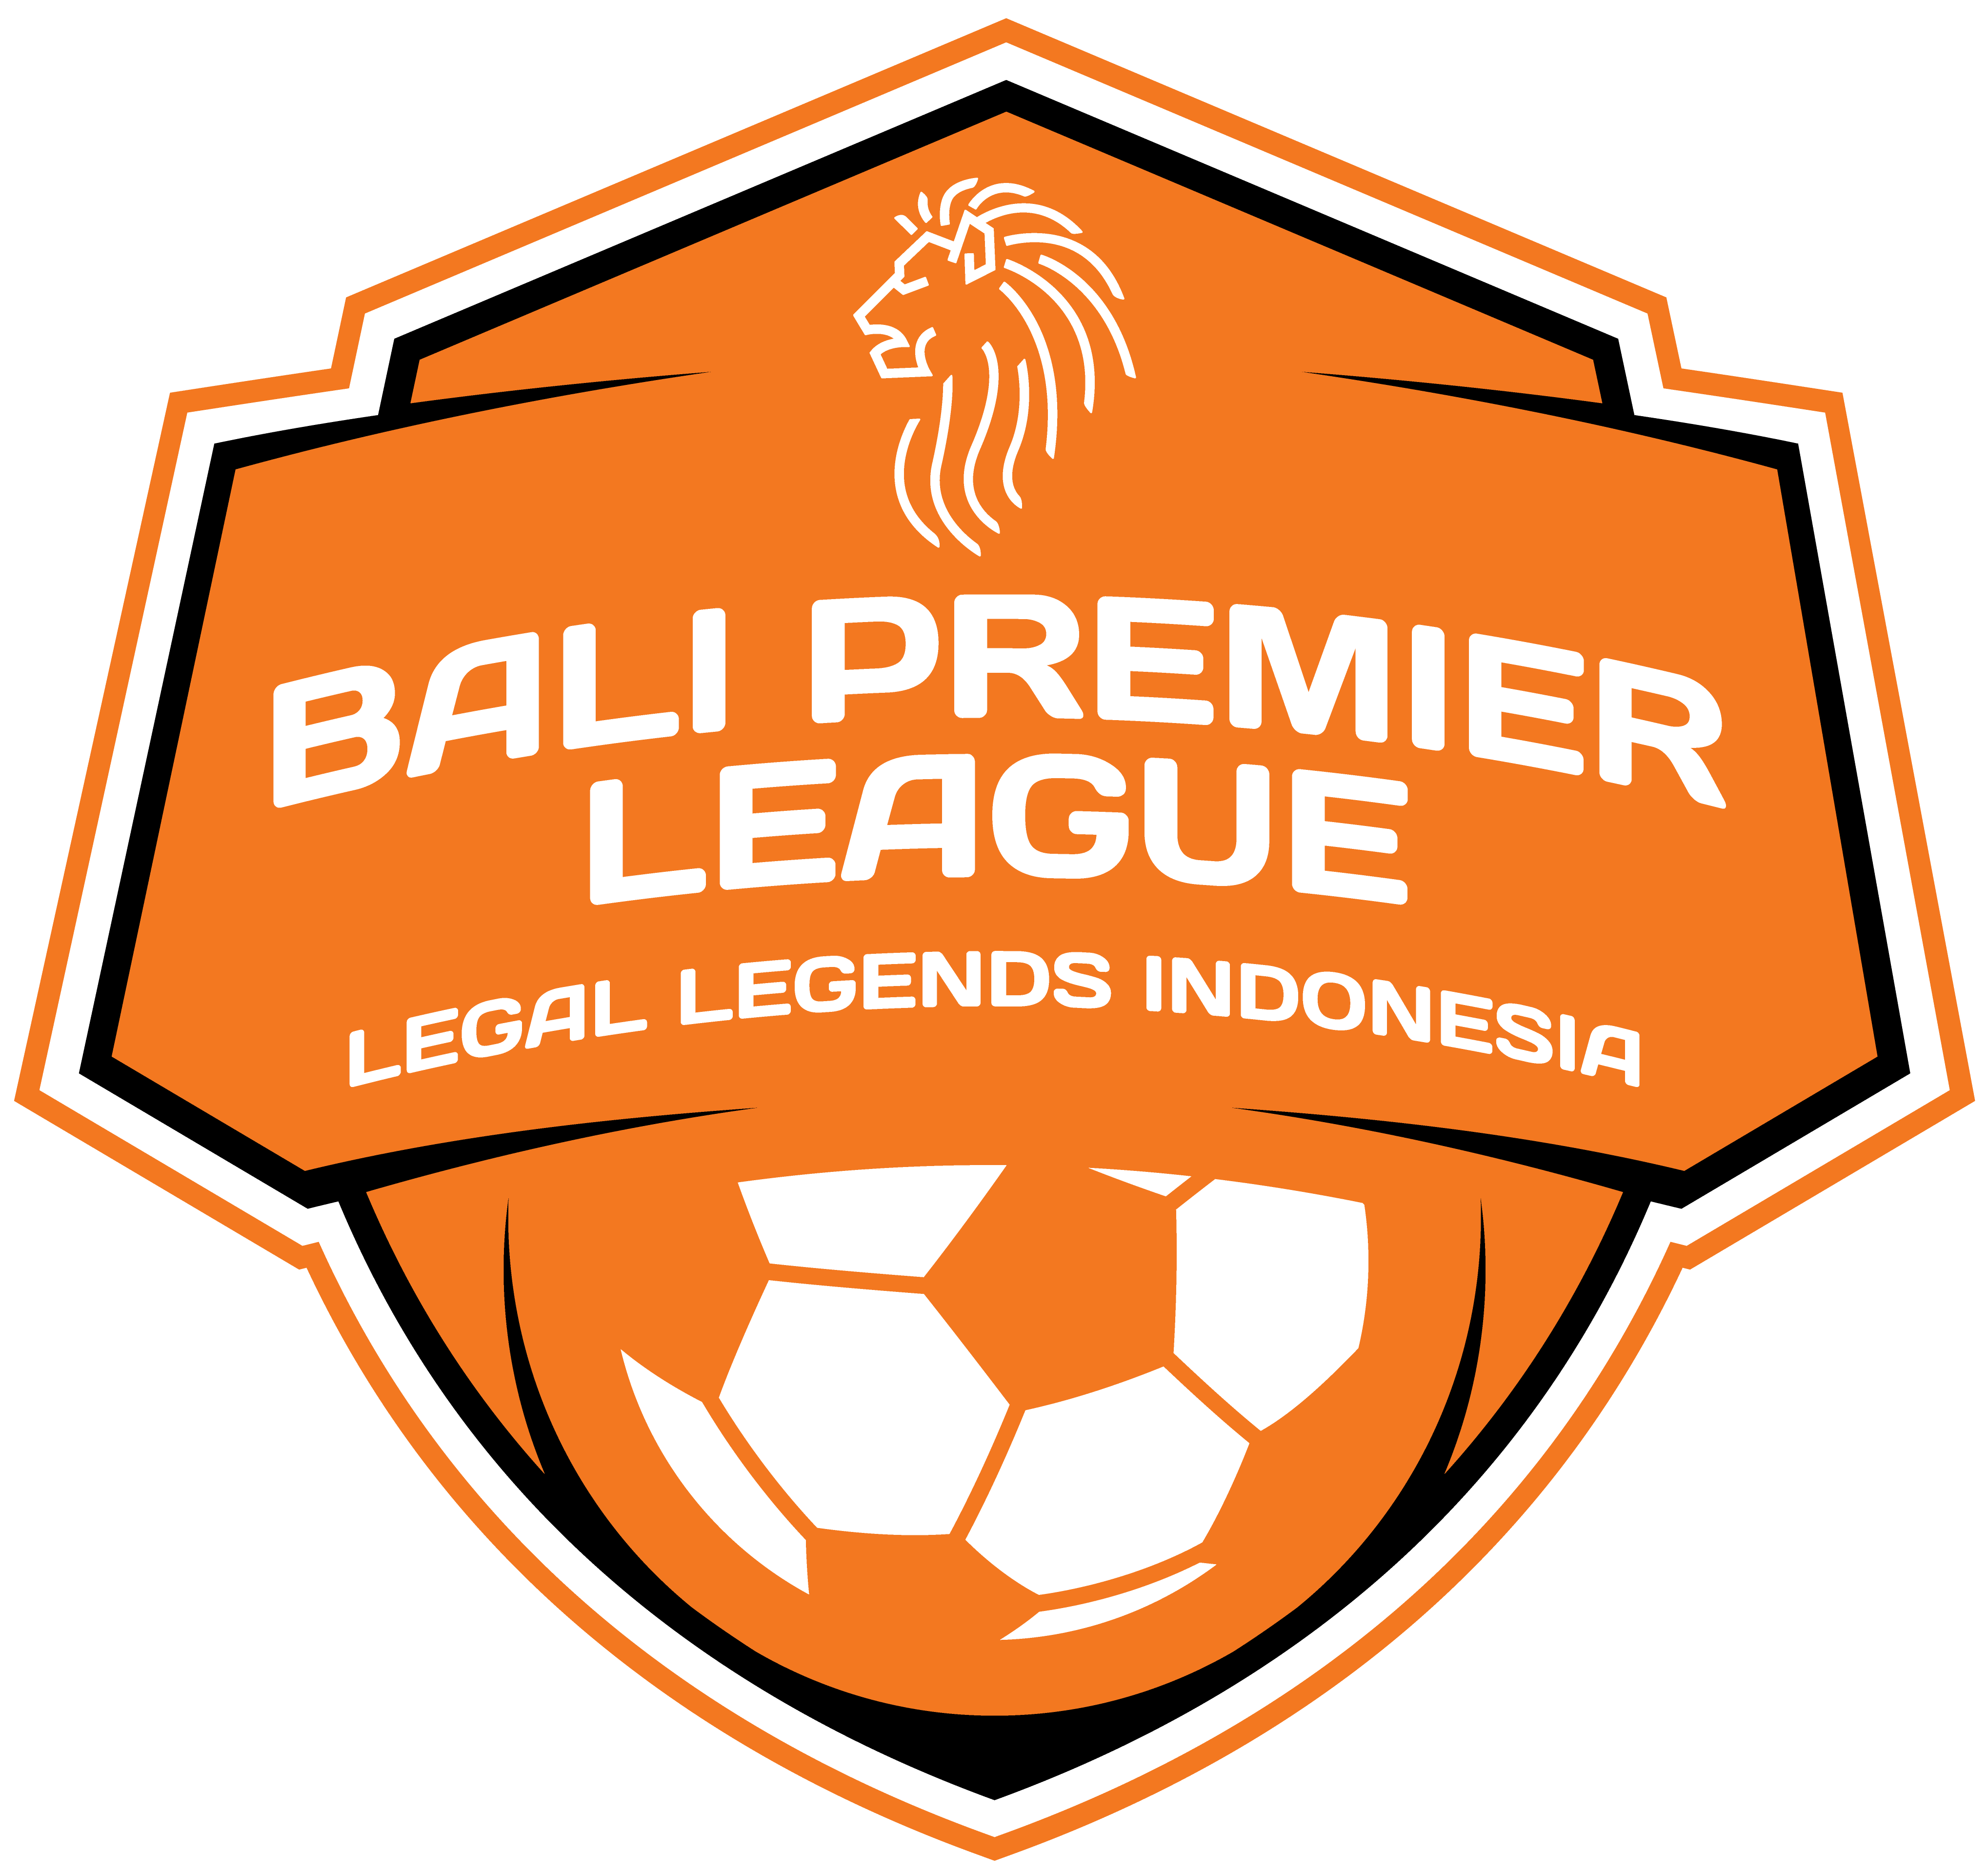 Agus Dipayana – Bali Premier League